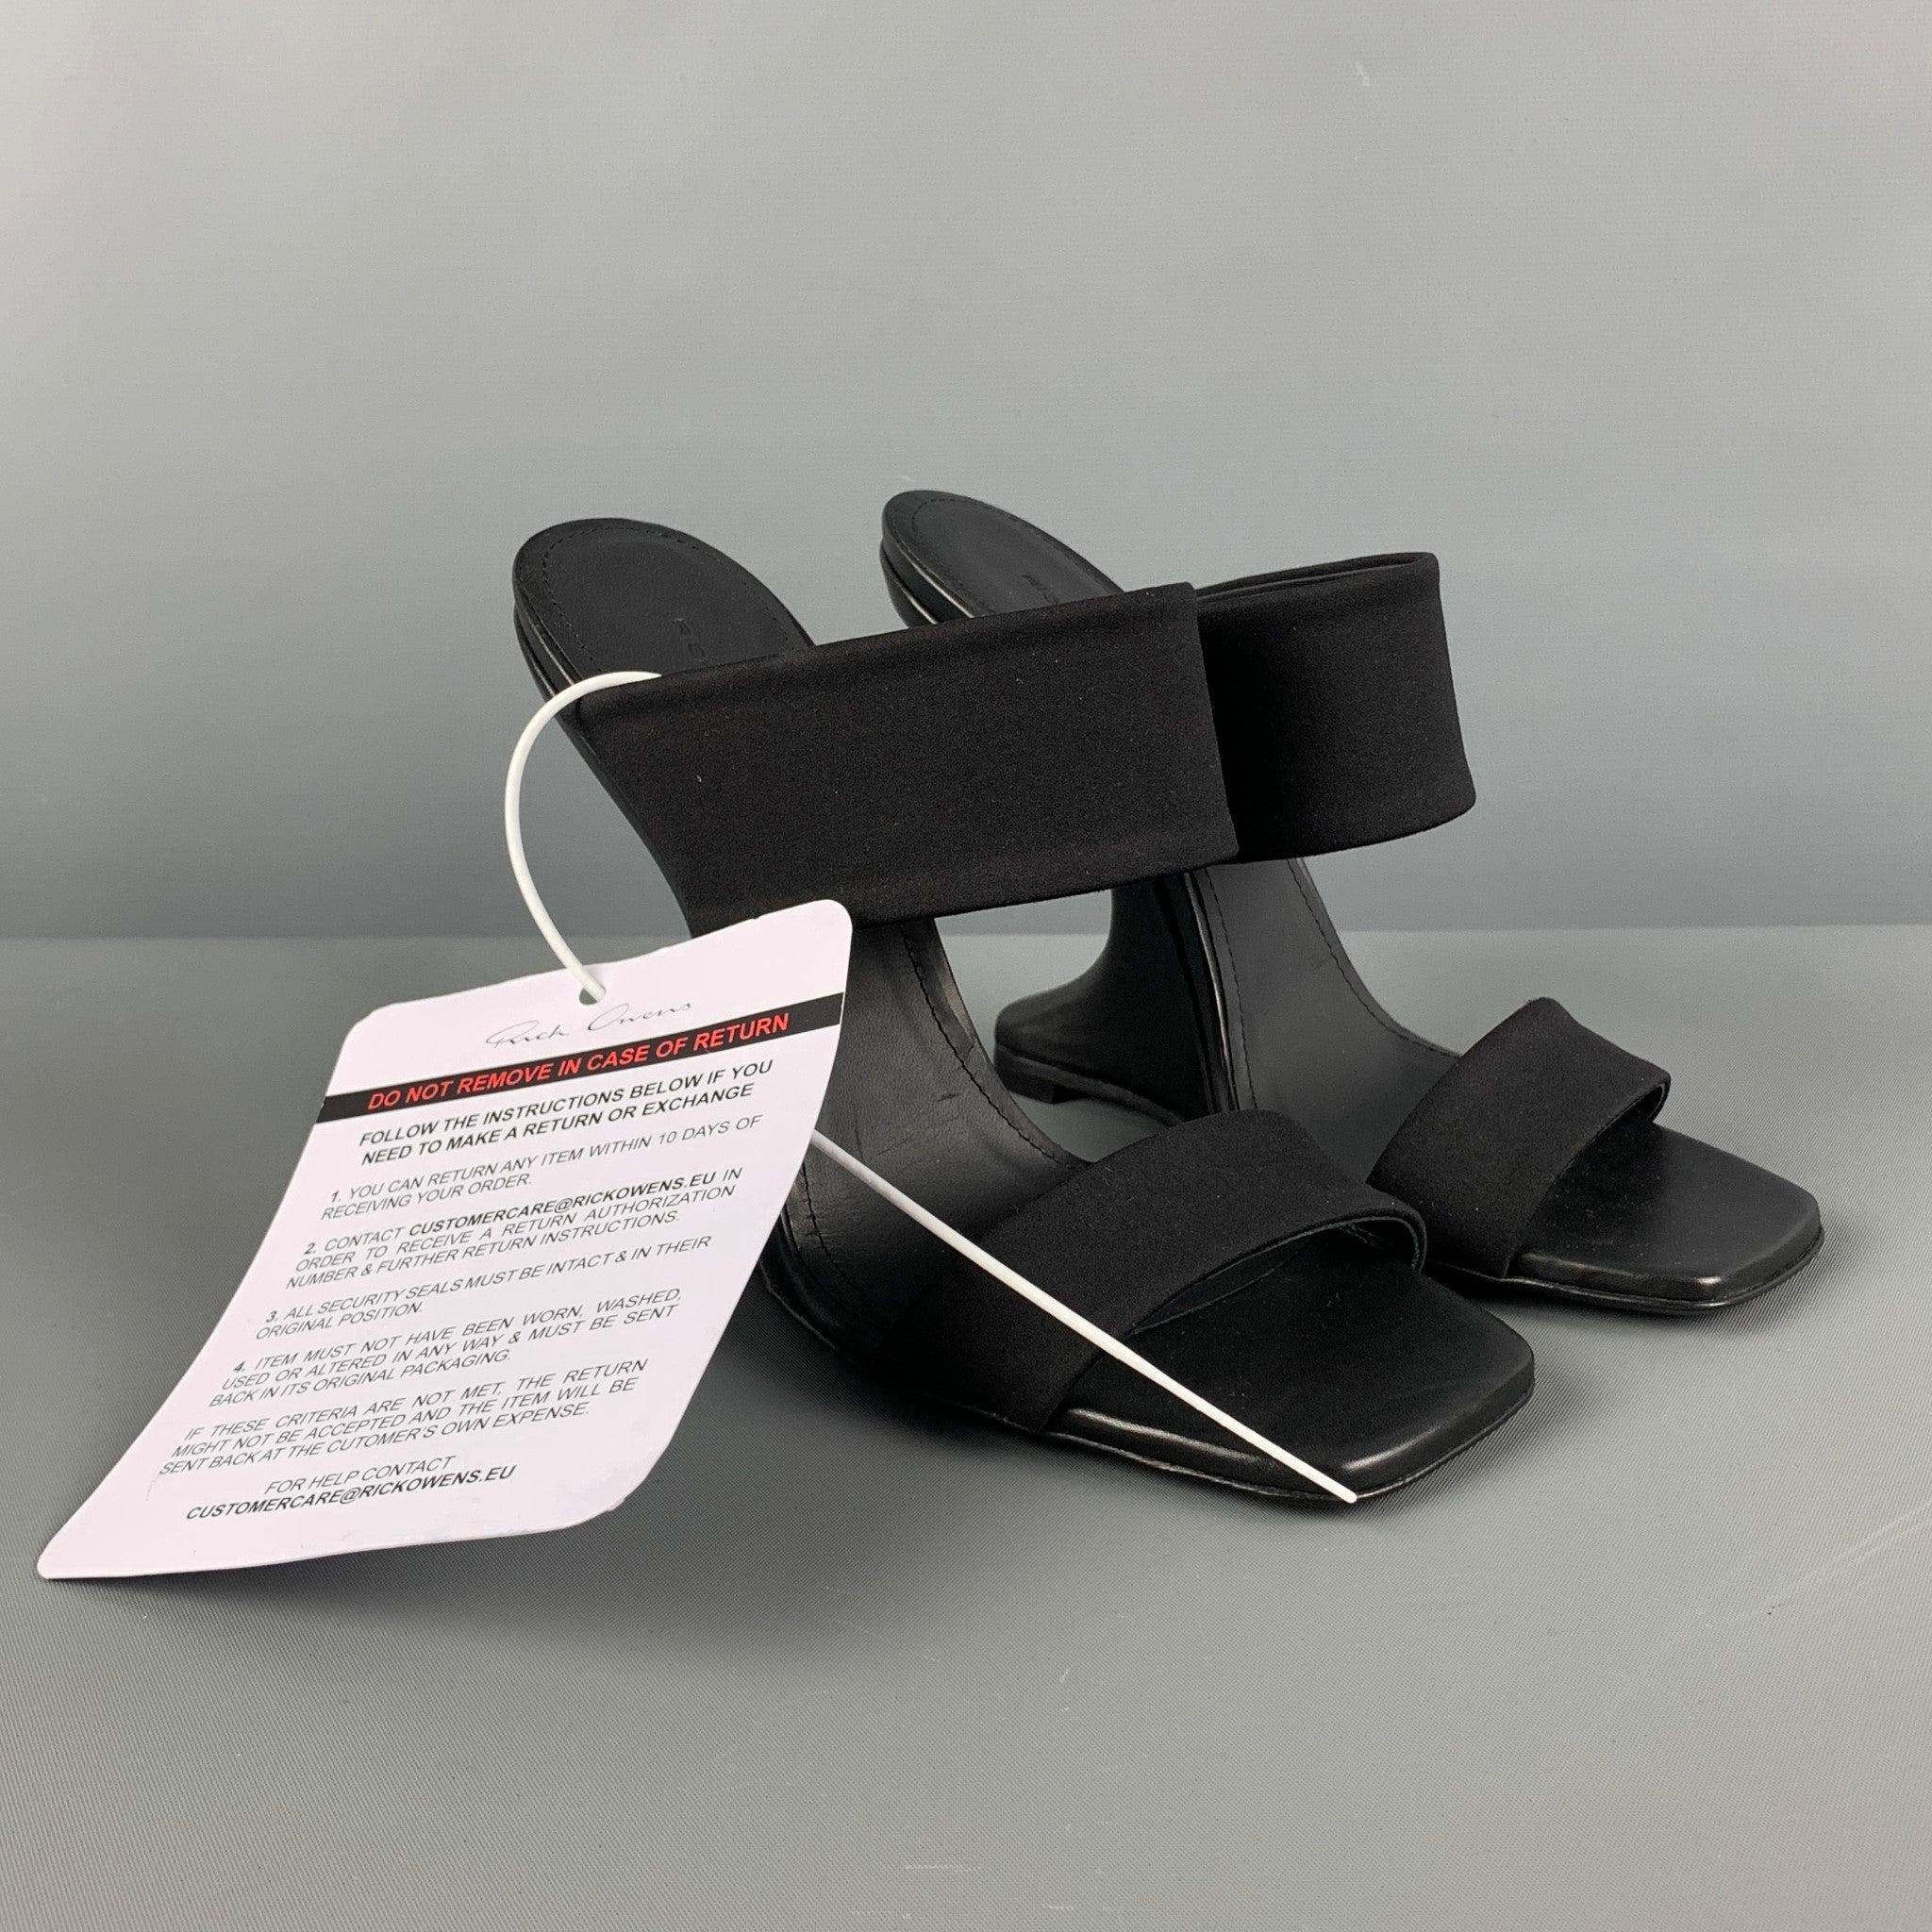 Les sandales LILIES de RICK OWENS sont présentées dans un nylon noir et présentent un bout carré, des brides épaisses sur l'empeigne et un talon compensé incurvé. Fabriquées en Italie.
Neuf avec étiquettes. 

Marqué :   37 

Mesures : 
  Talon : 5.5